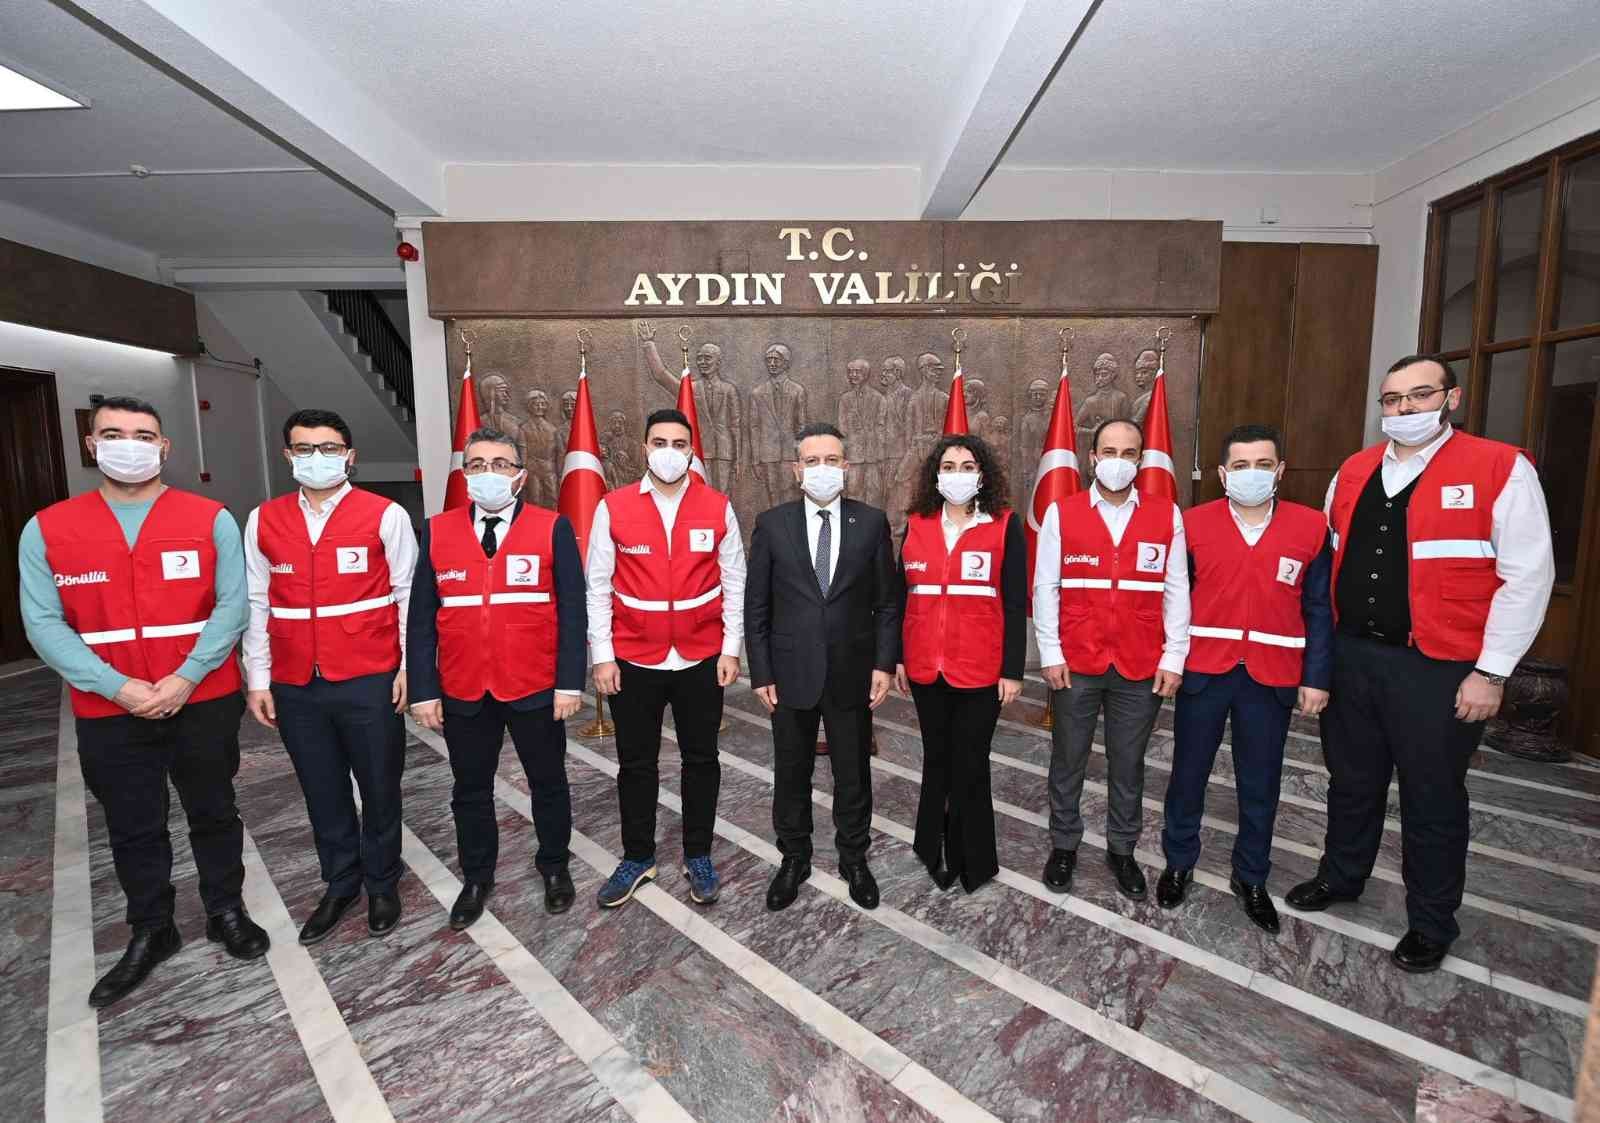 Türk Kızılay Aydın Şubesi yeni yönetimi Vali Aksoy ile görüştü #aydin